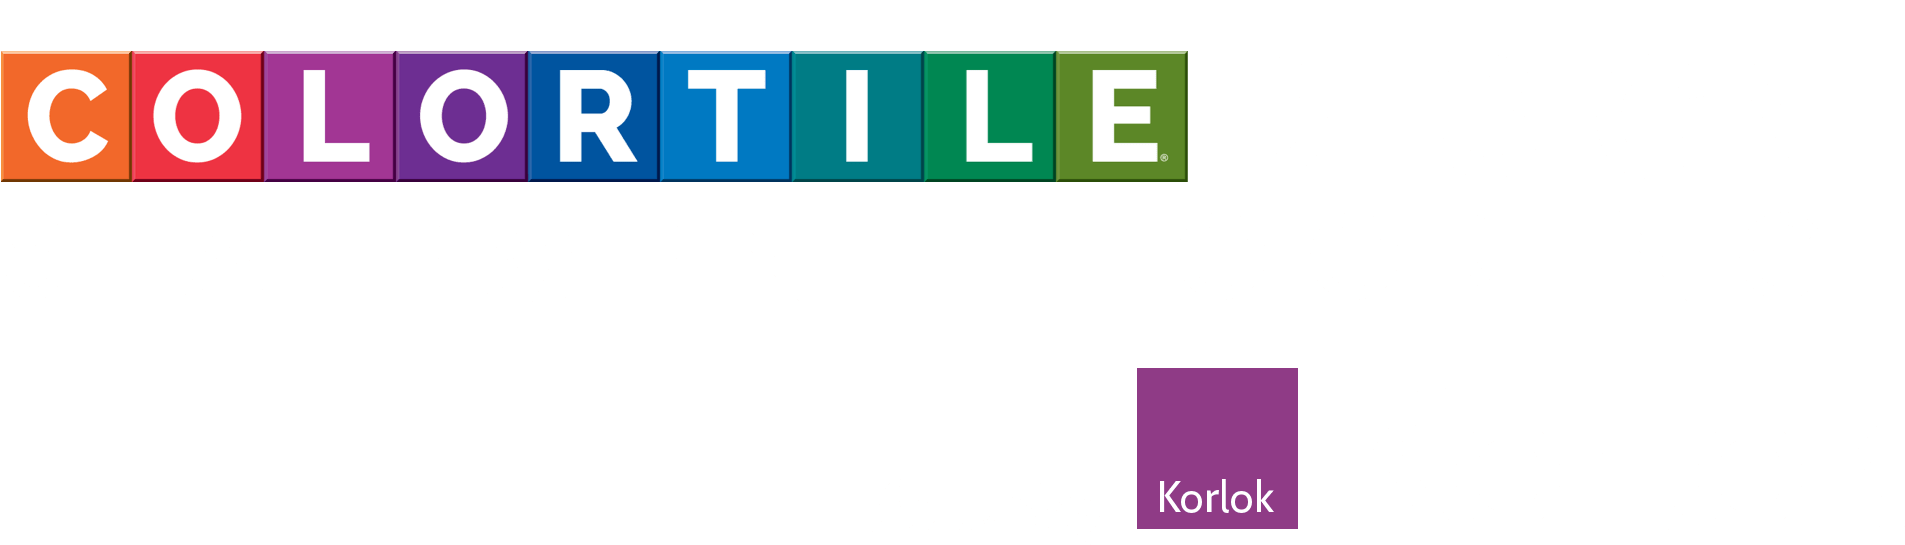 Colortile design | Tom's Carpet & Flooring Outlet